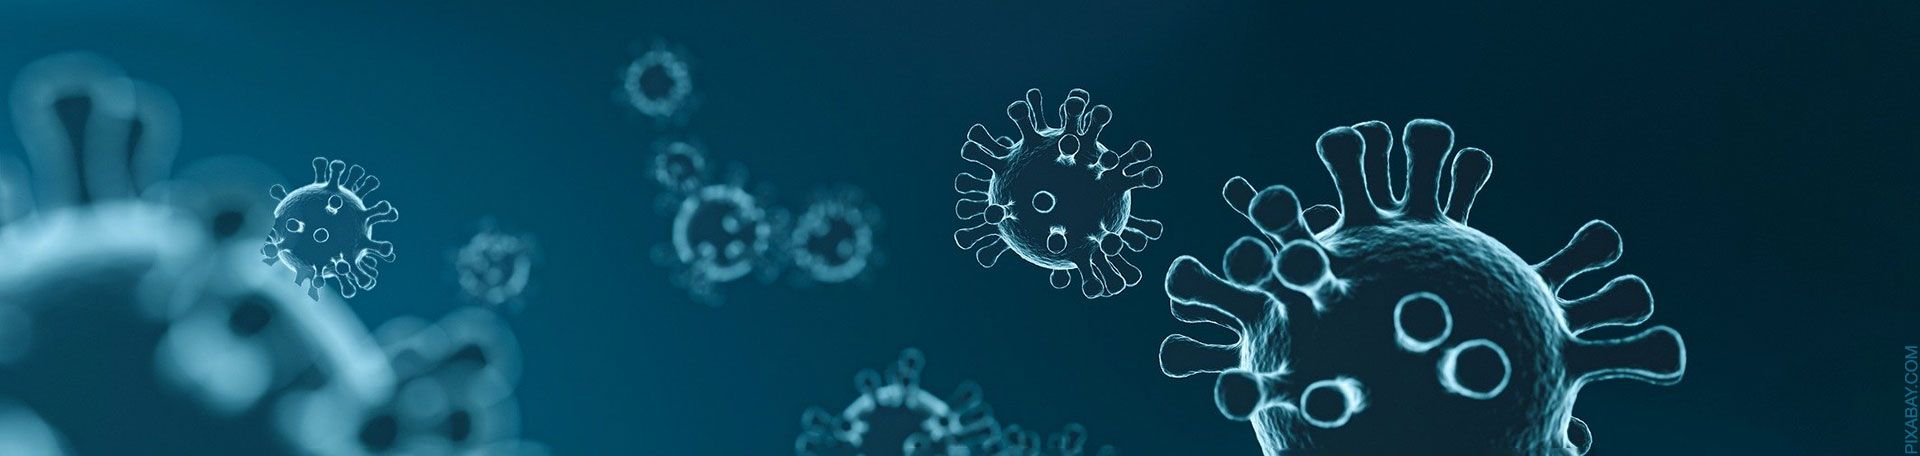 Illustrationsgrafik Corona-Virus